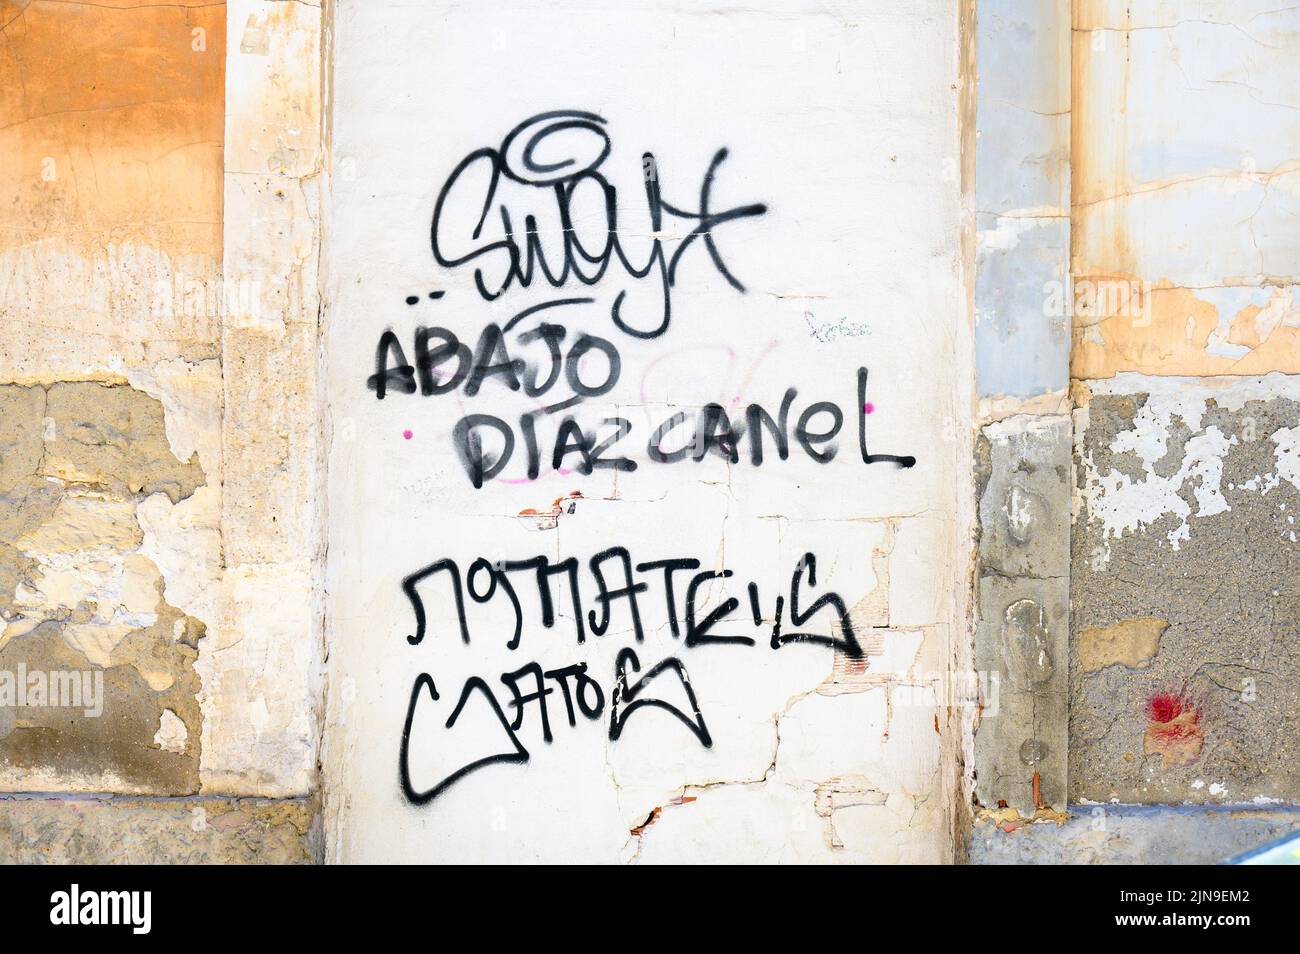 Ein urbanes Graffiti mit der Aufschrift „Abajo Diaz-Canel“. Der politische Text ist in einer Wand in der spanischen Stadt gemalt. Stockfoto